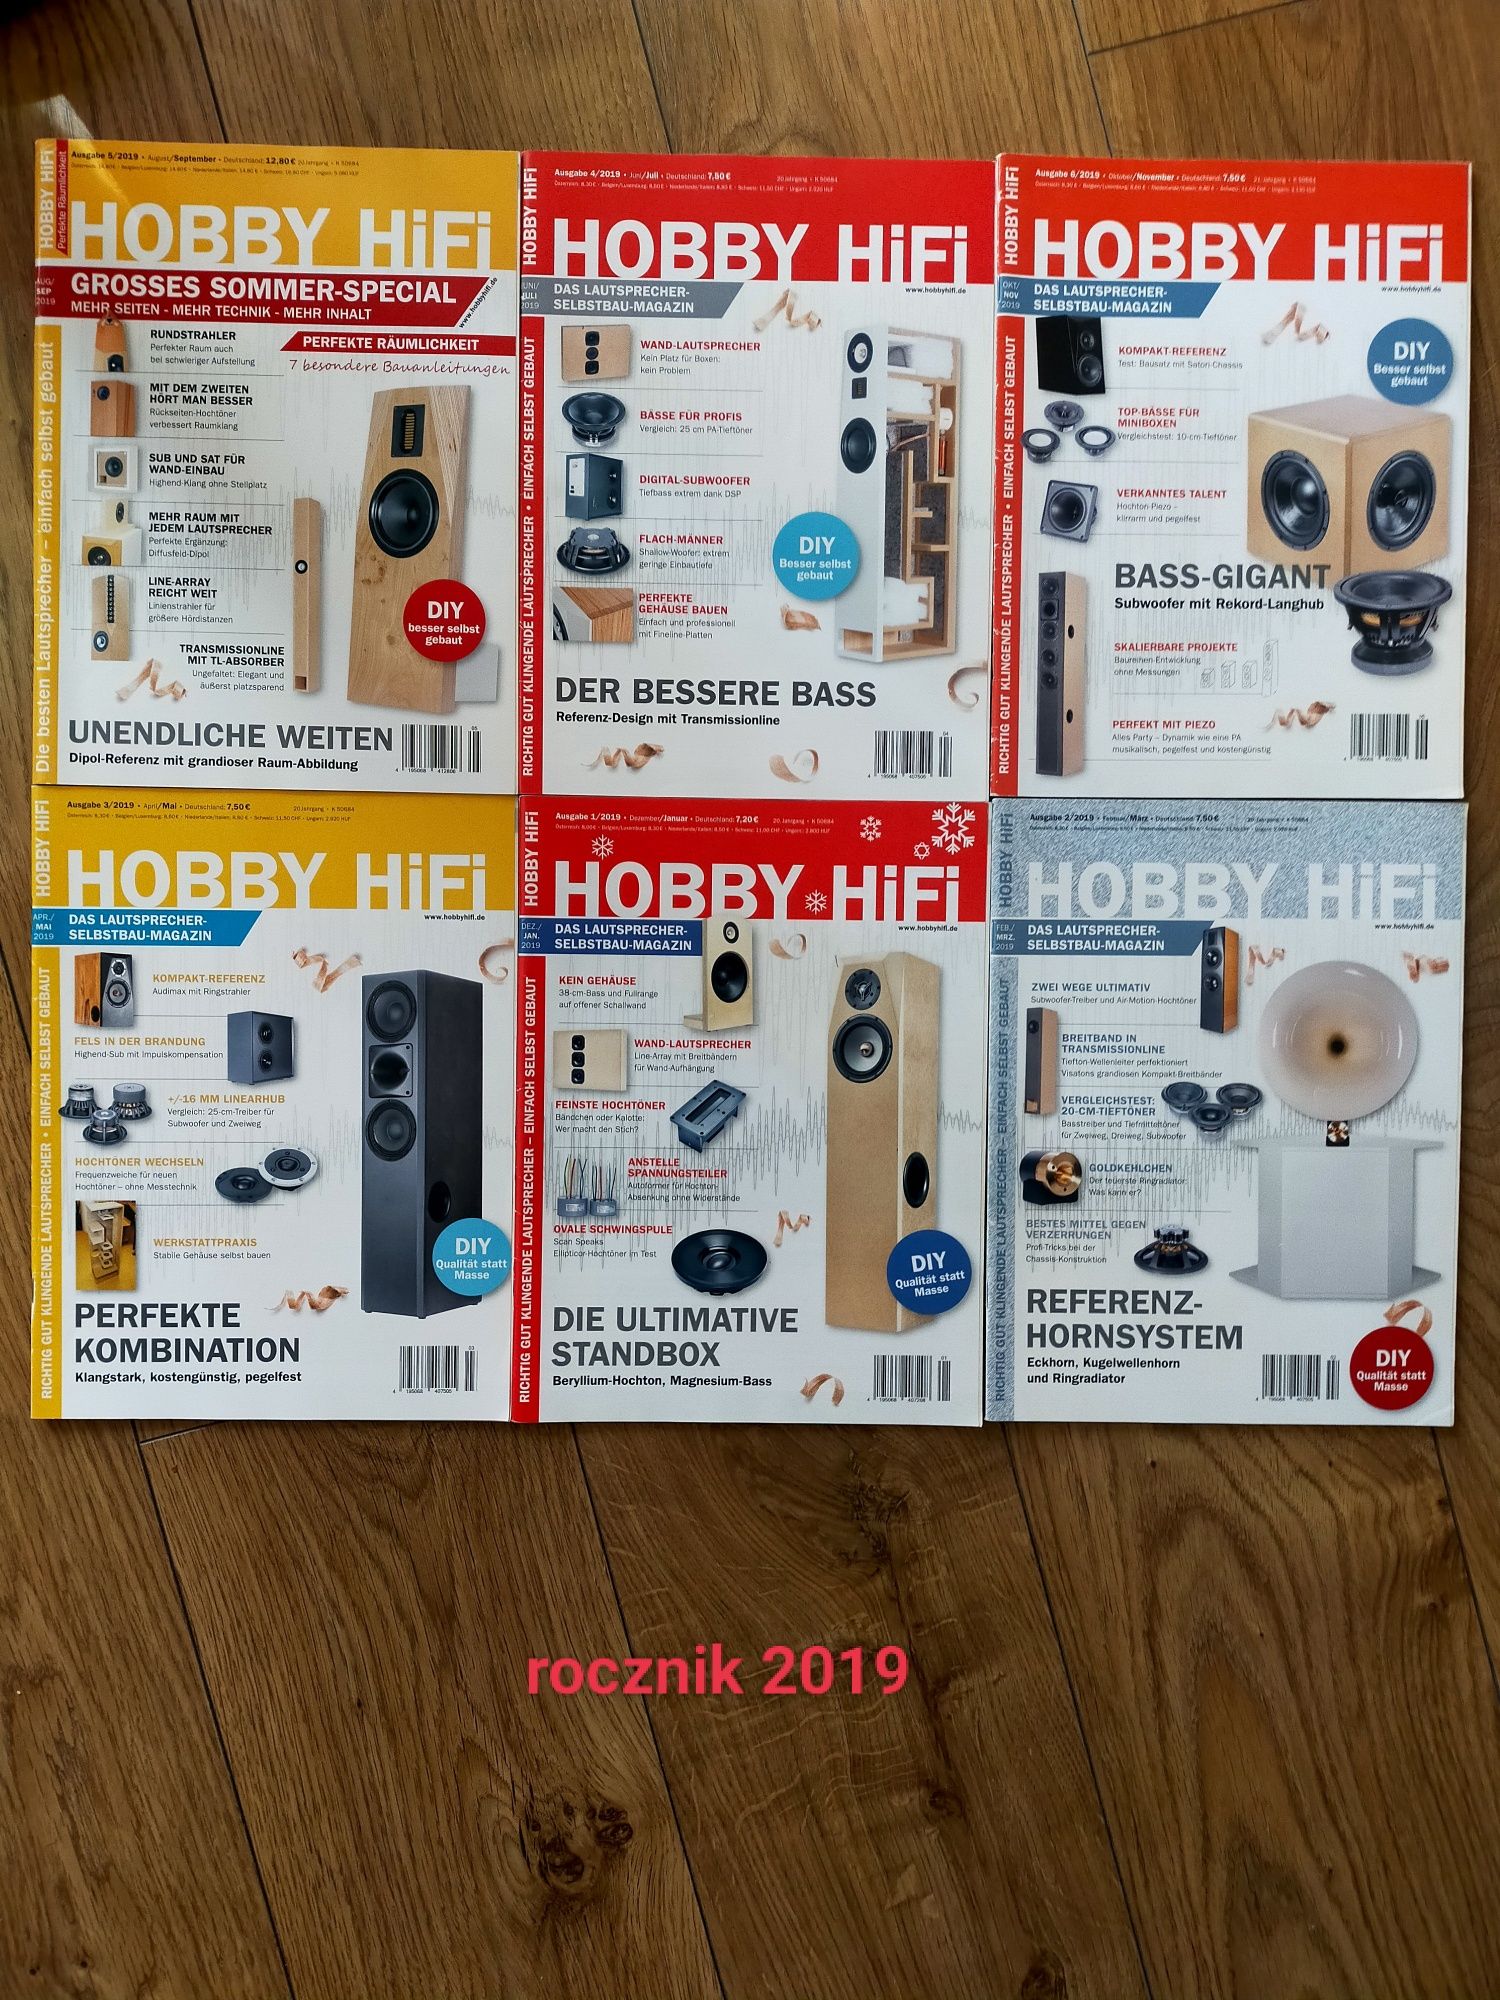 Roczniki czasopisma Hobby HiFi 2012 do 2019